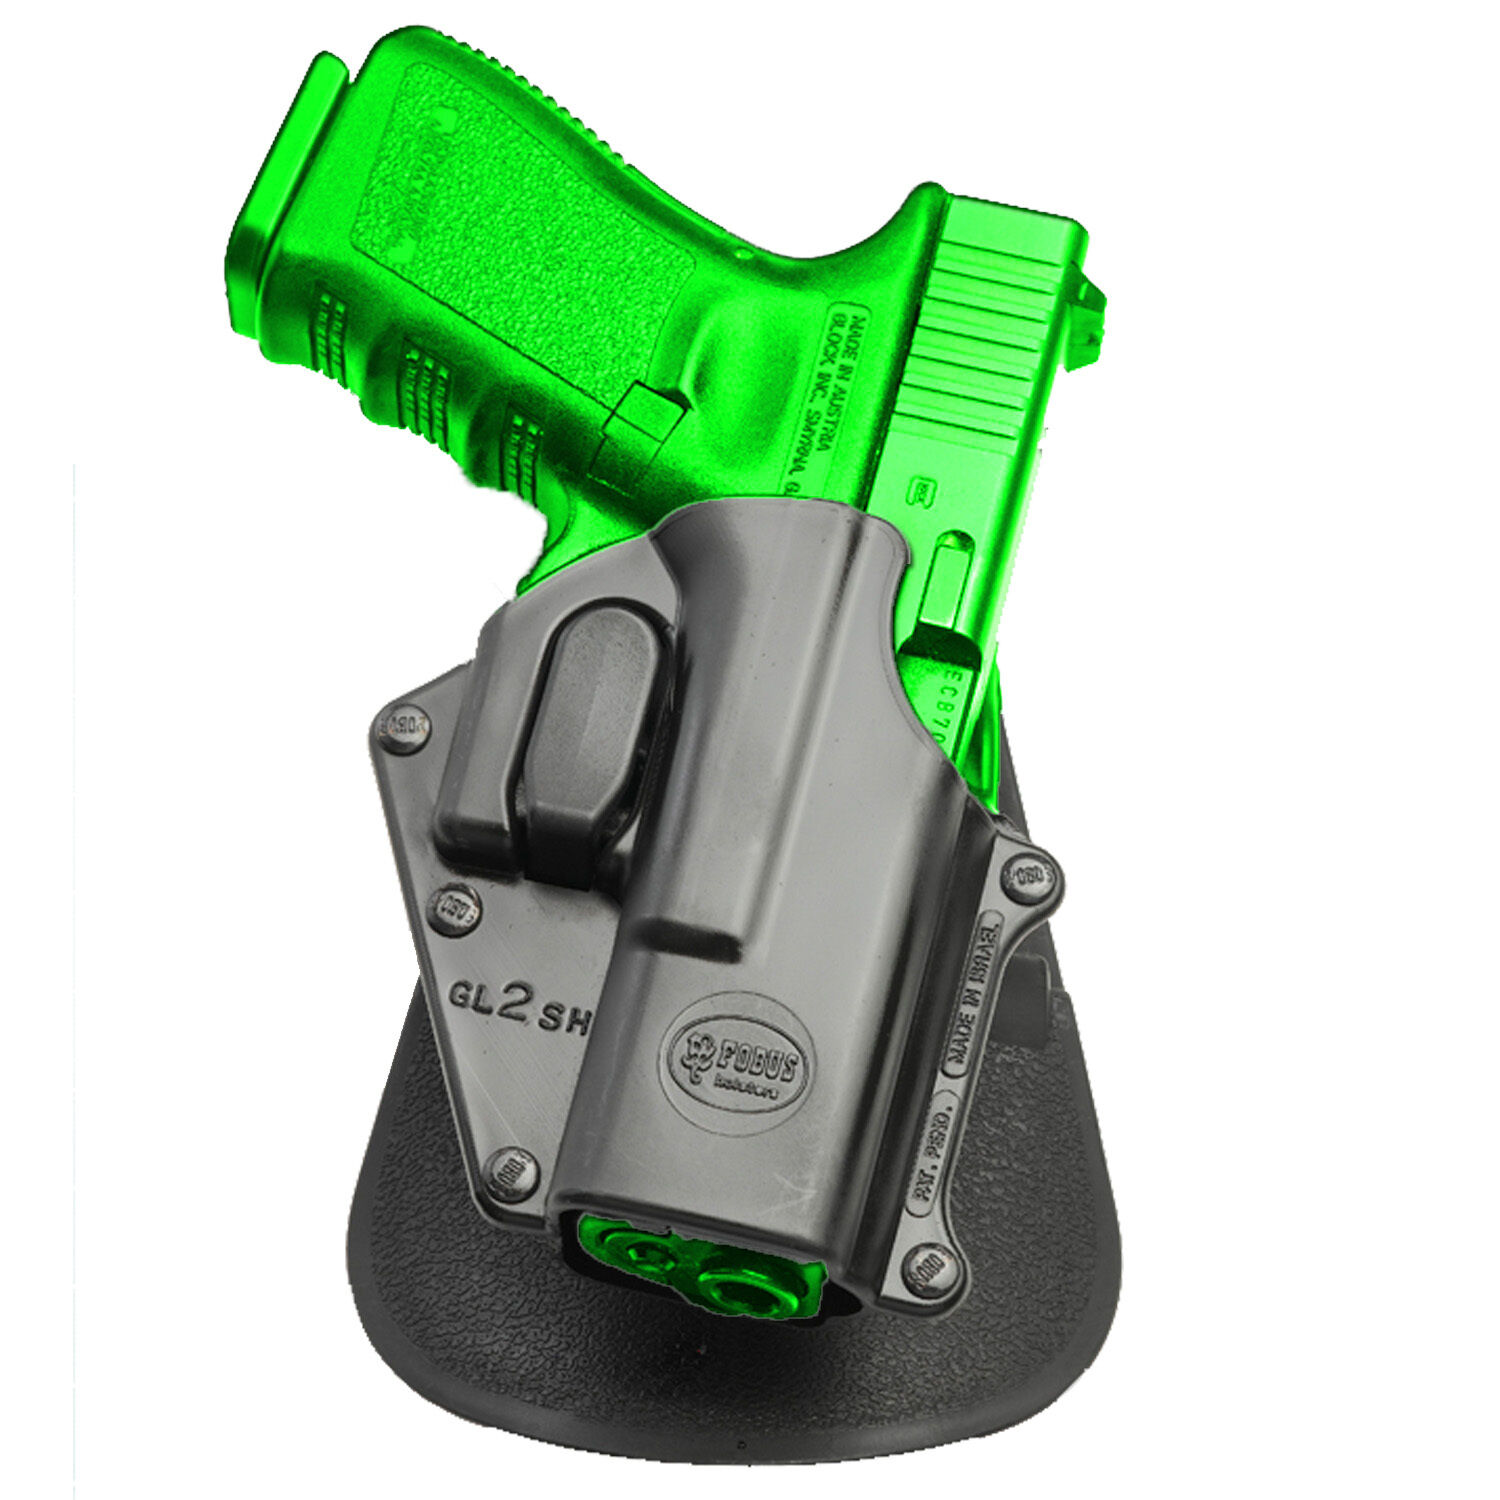 Fobus Trigger Active Retention Holster For Glock 19, 17, 22 - GL-2 SH